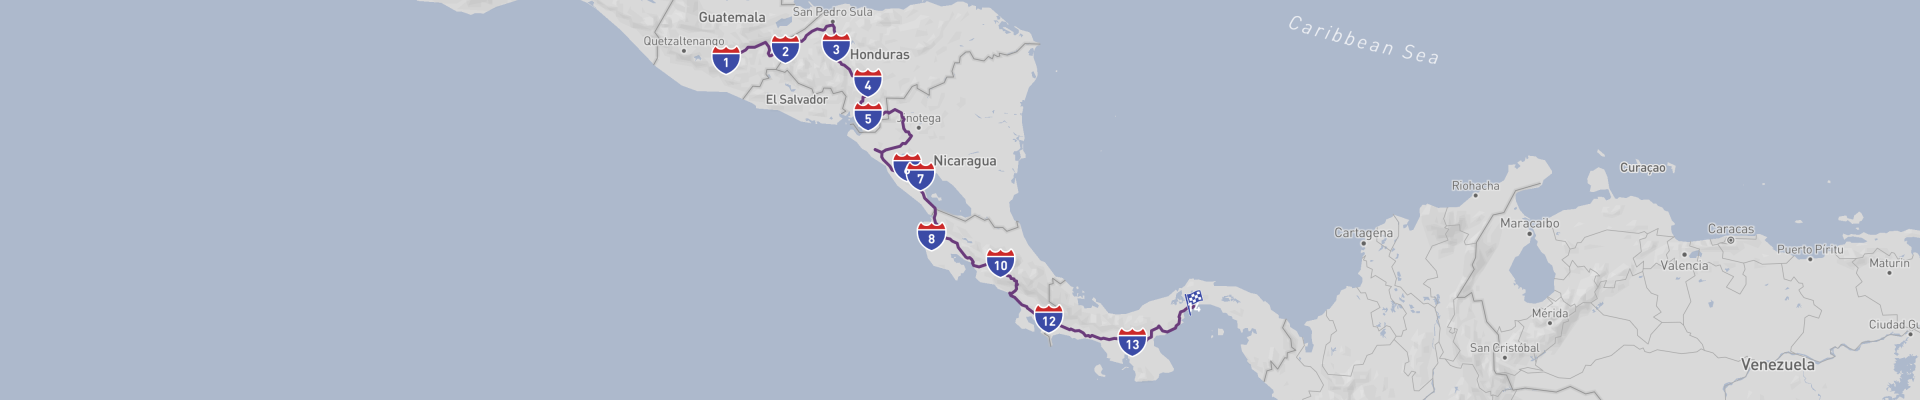 穿越中美洲经典公路之旅